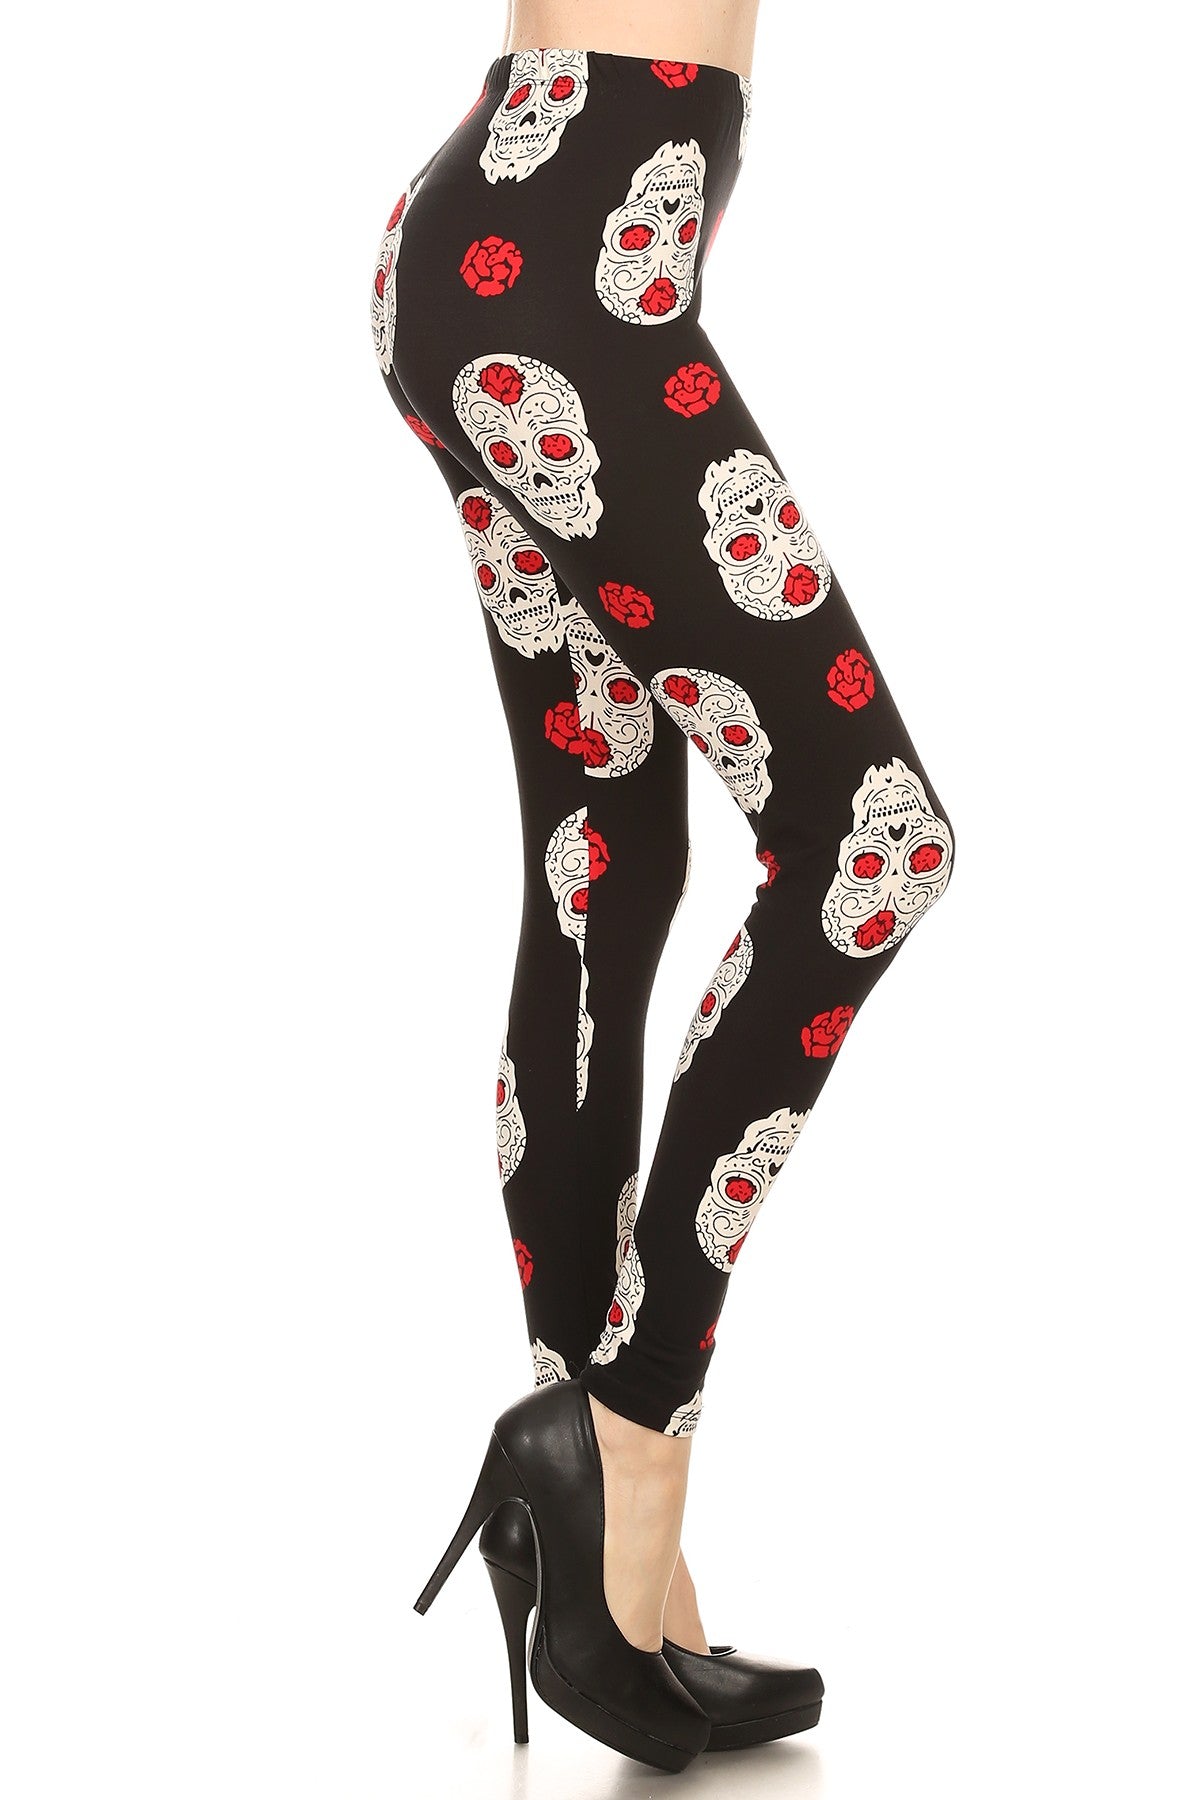 Skulls 'N Roses - Women's Plus Size 3X-5X Leggings – Apple Girl